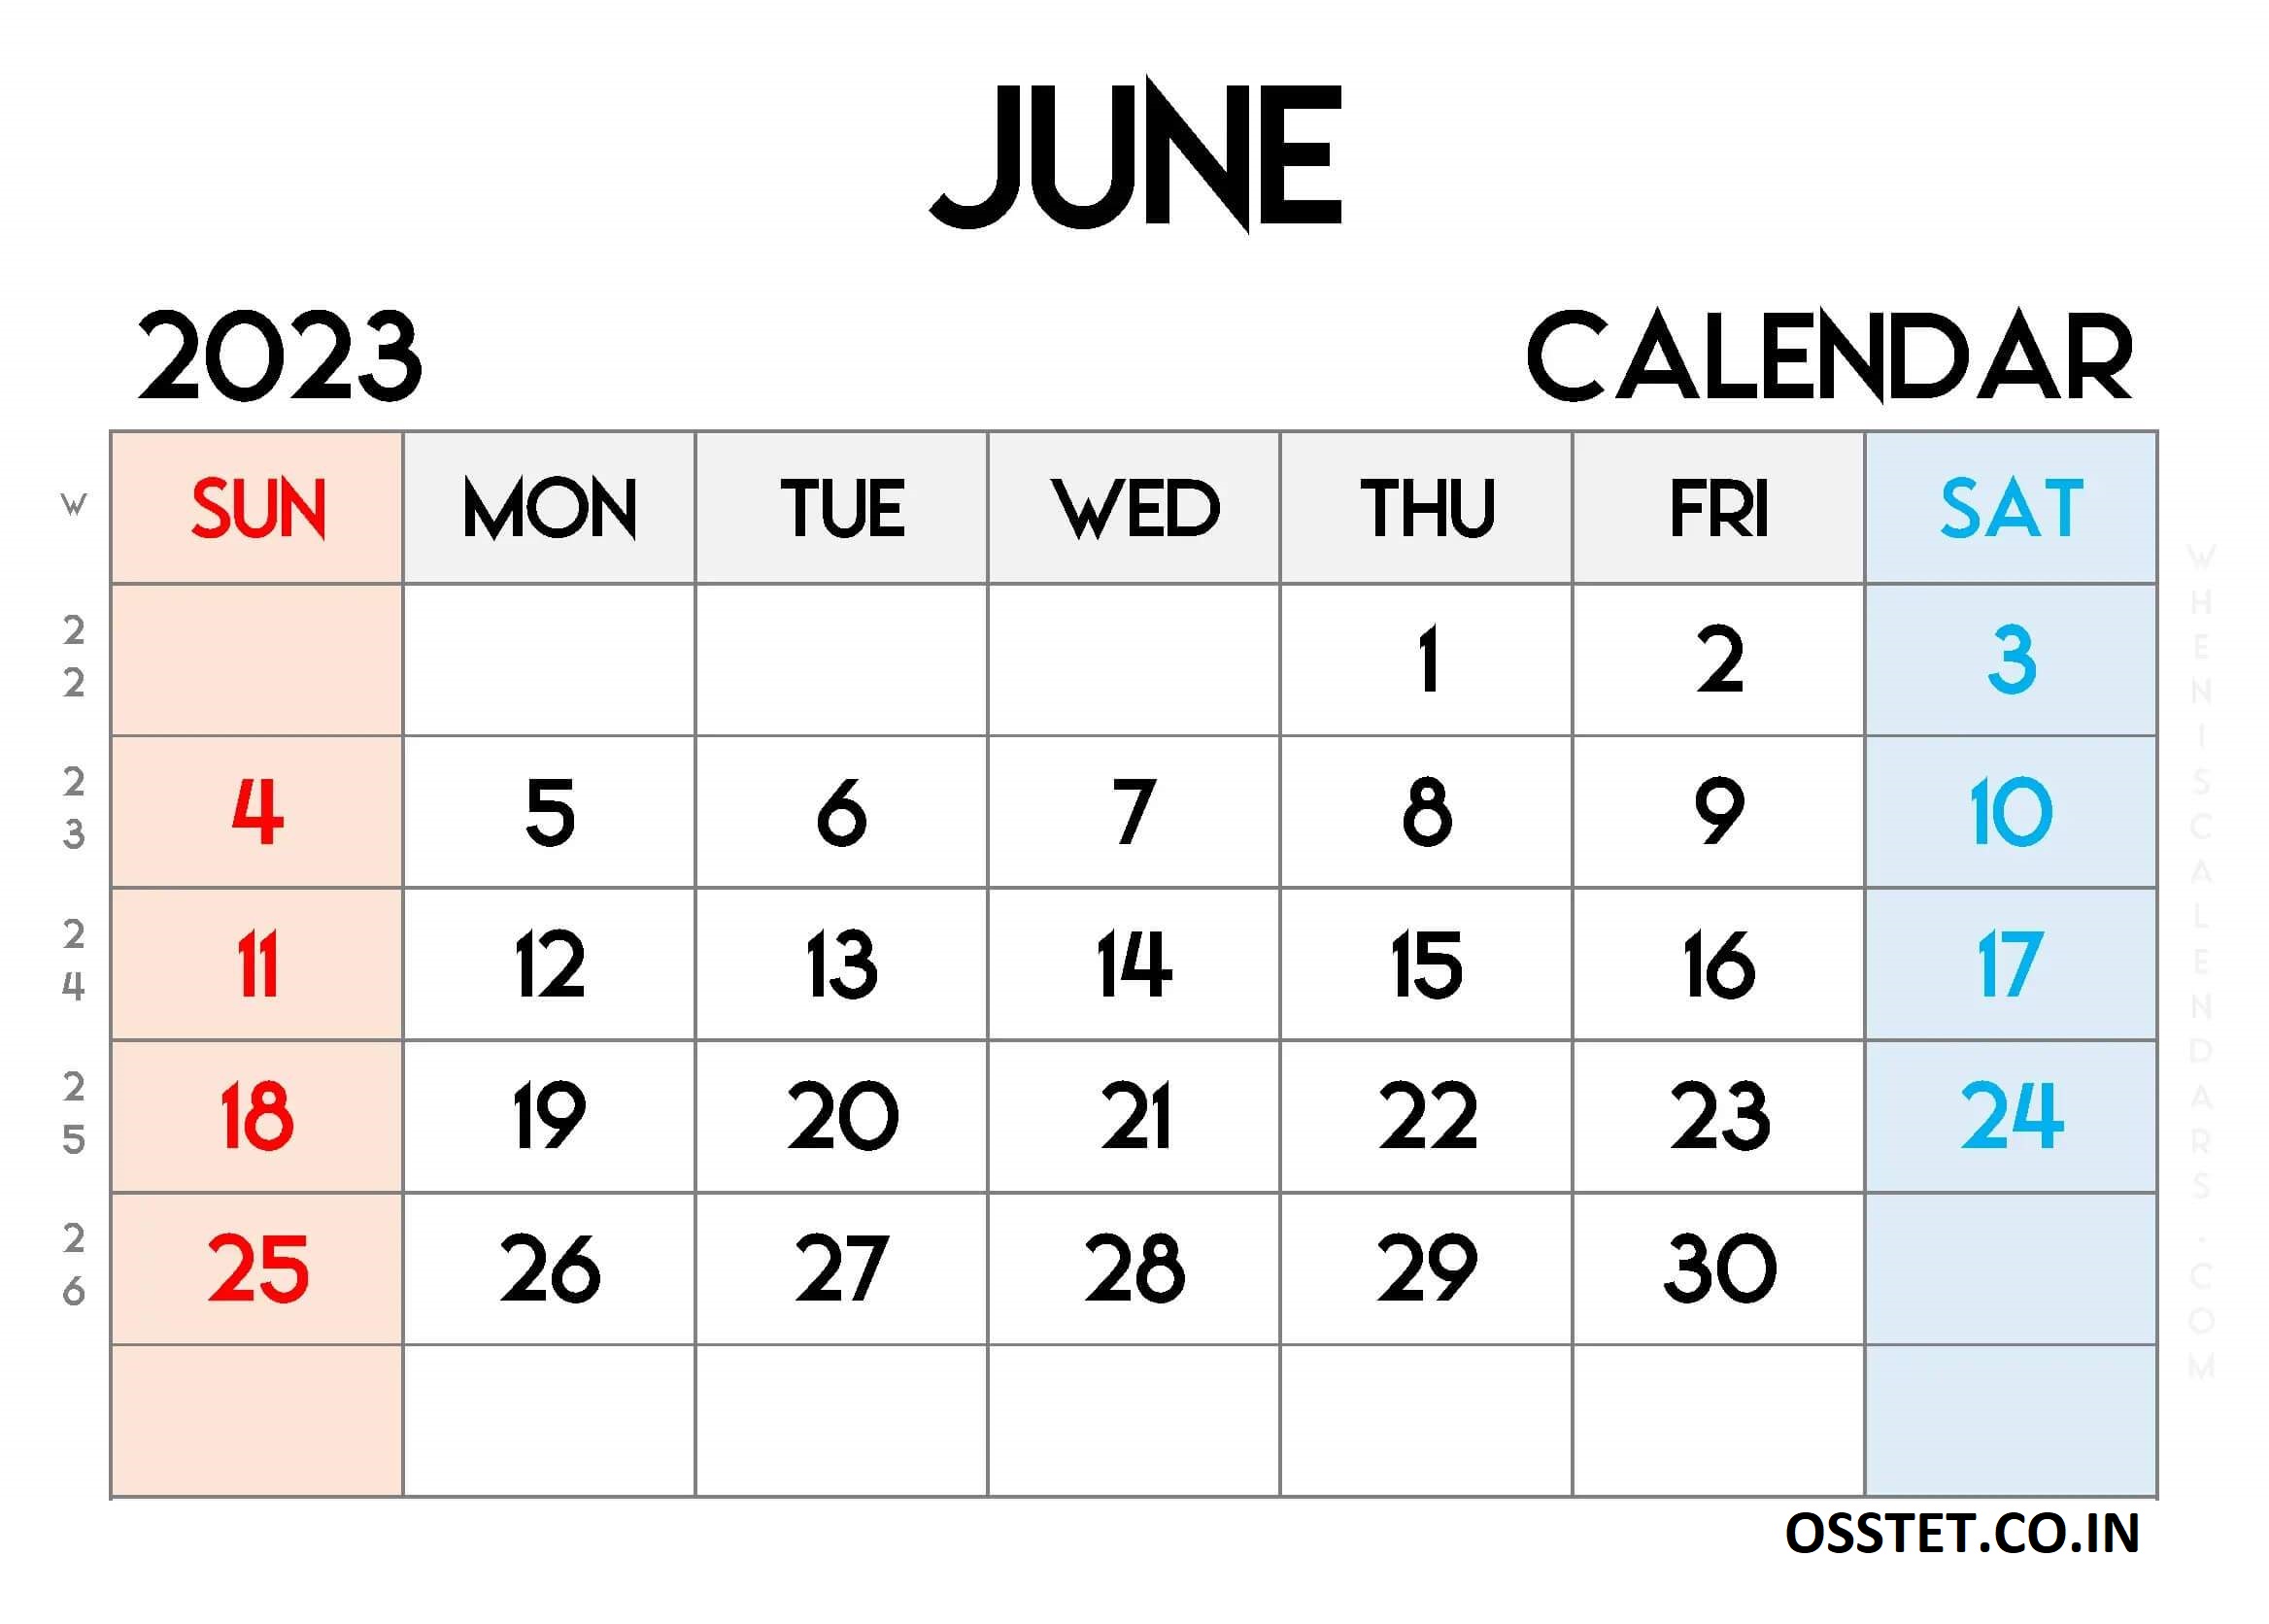 Free Printable June Calendar 2023 With Week Numbers